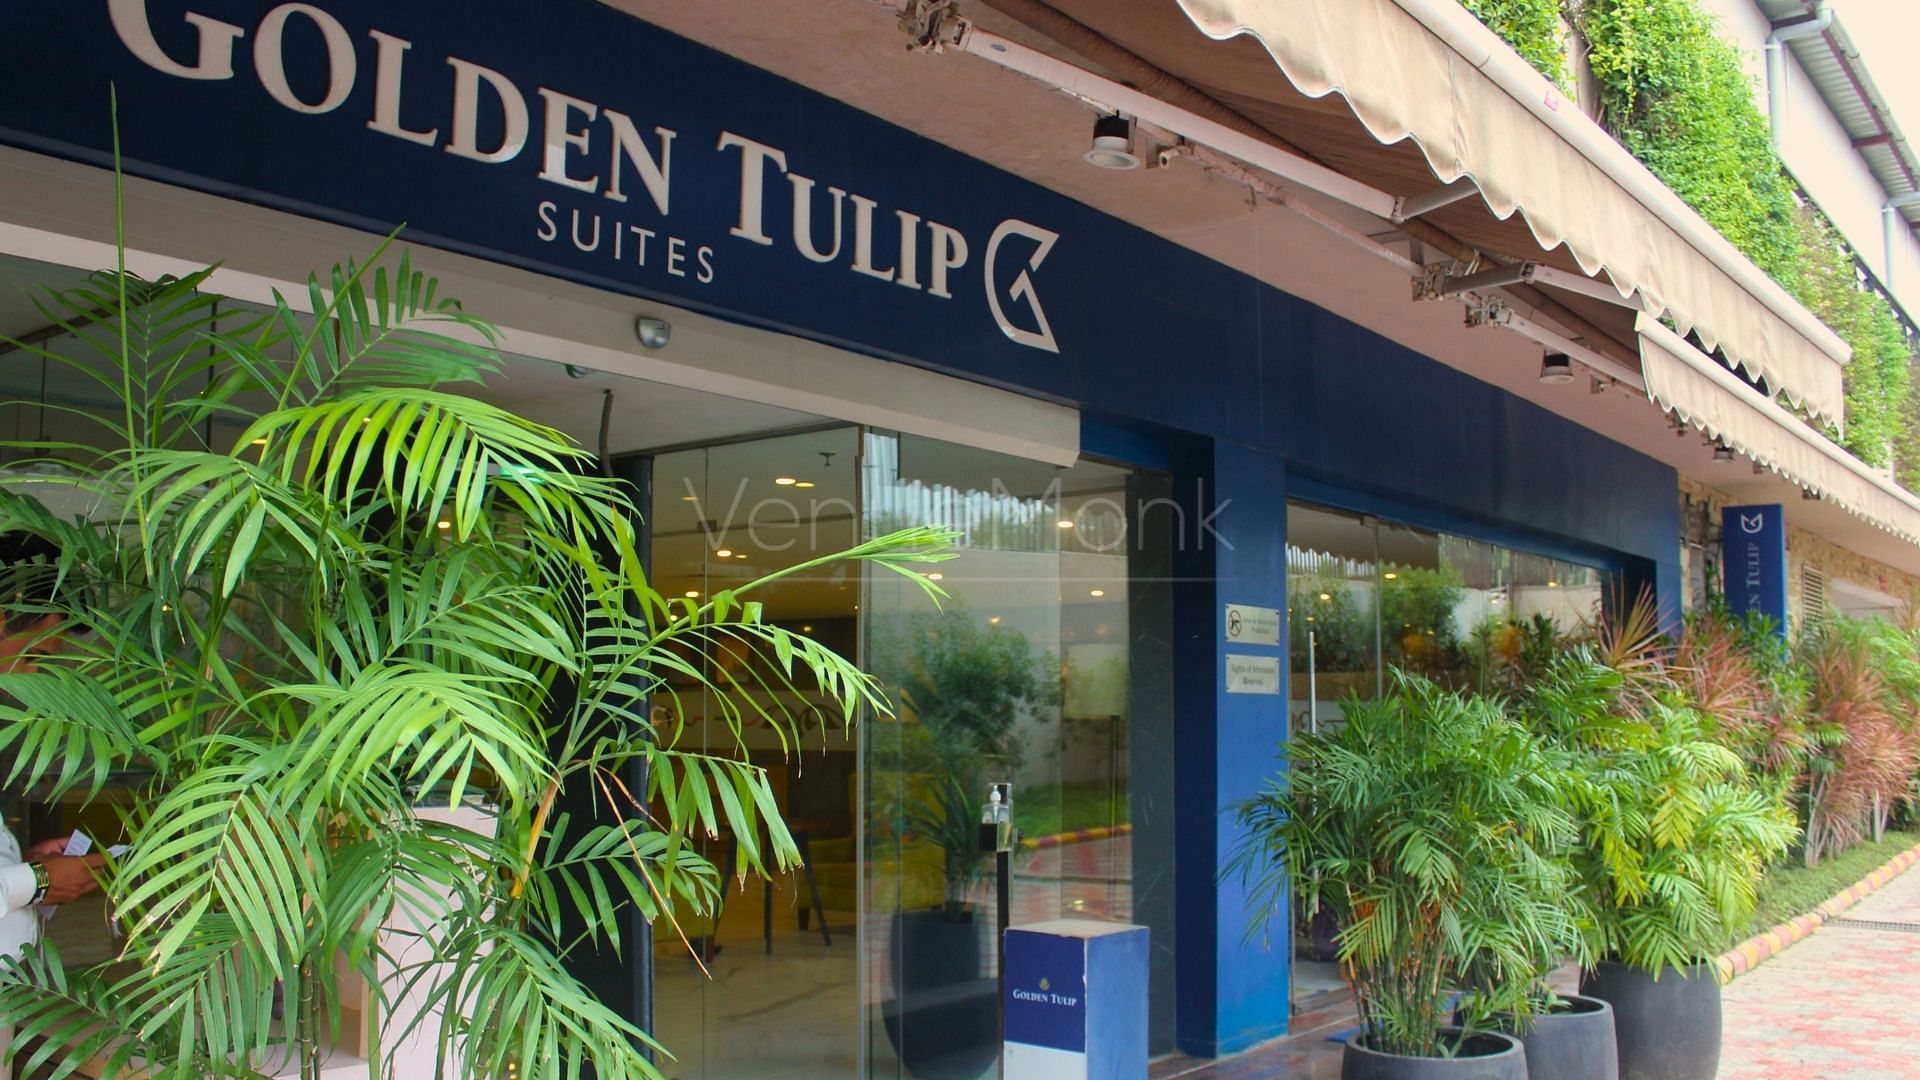 Golden Tulip Suites in Gwal Pahadi, Gurgaon